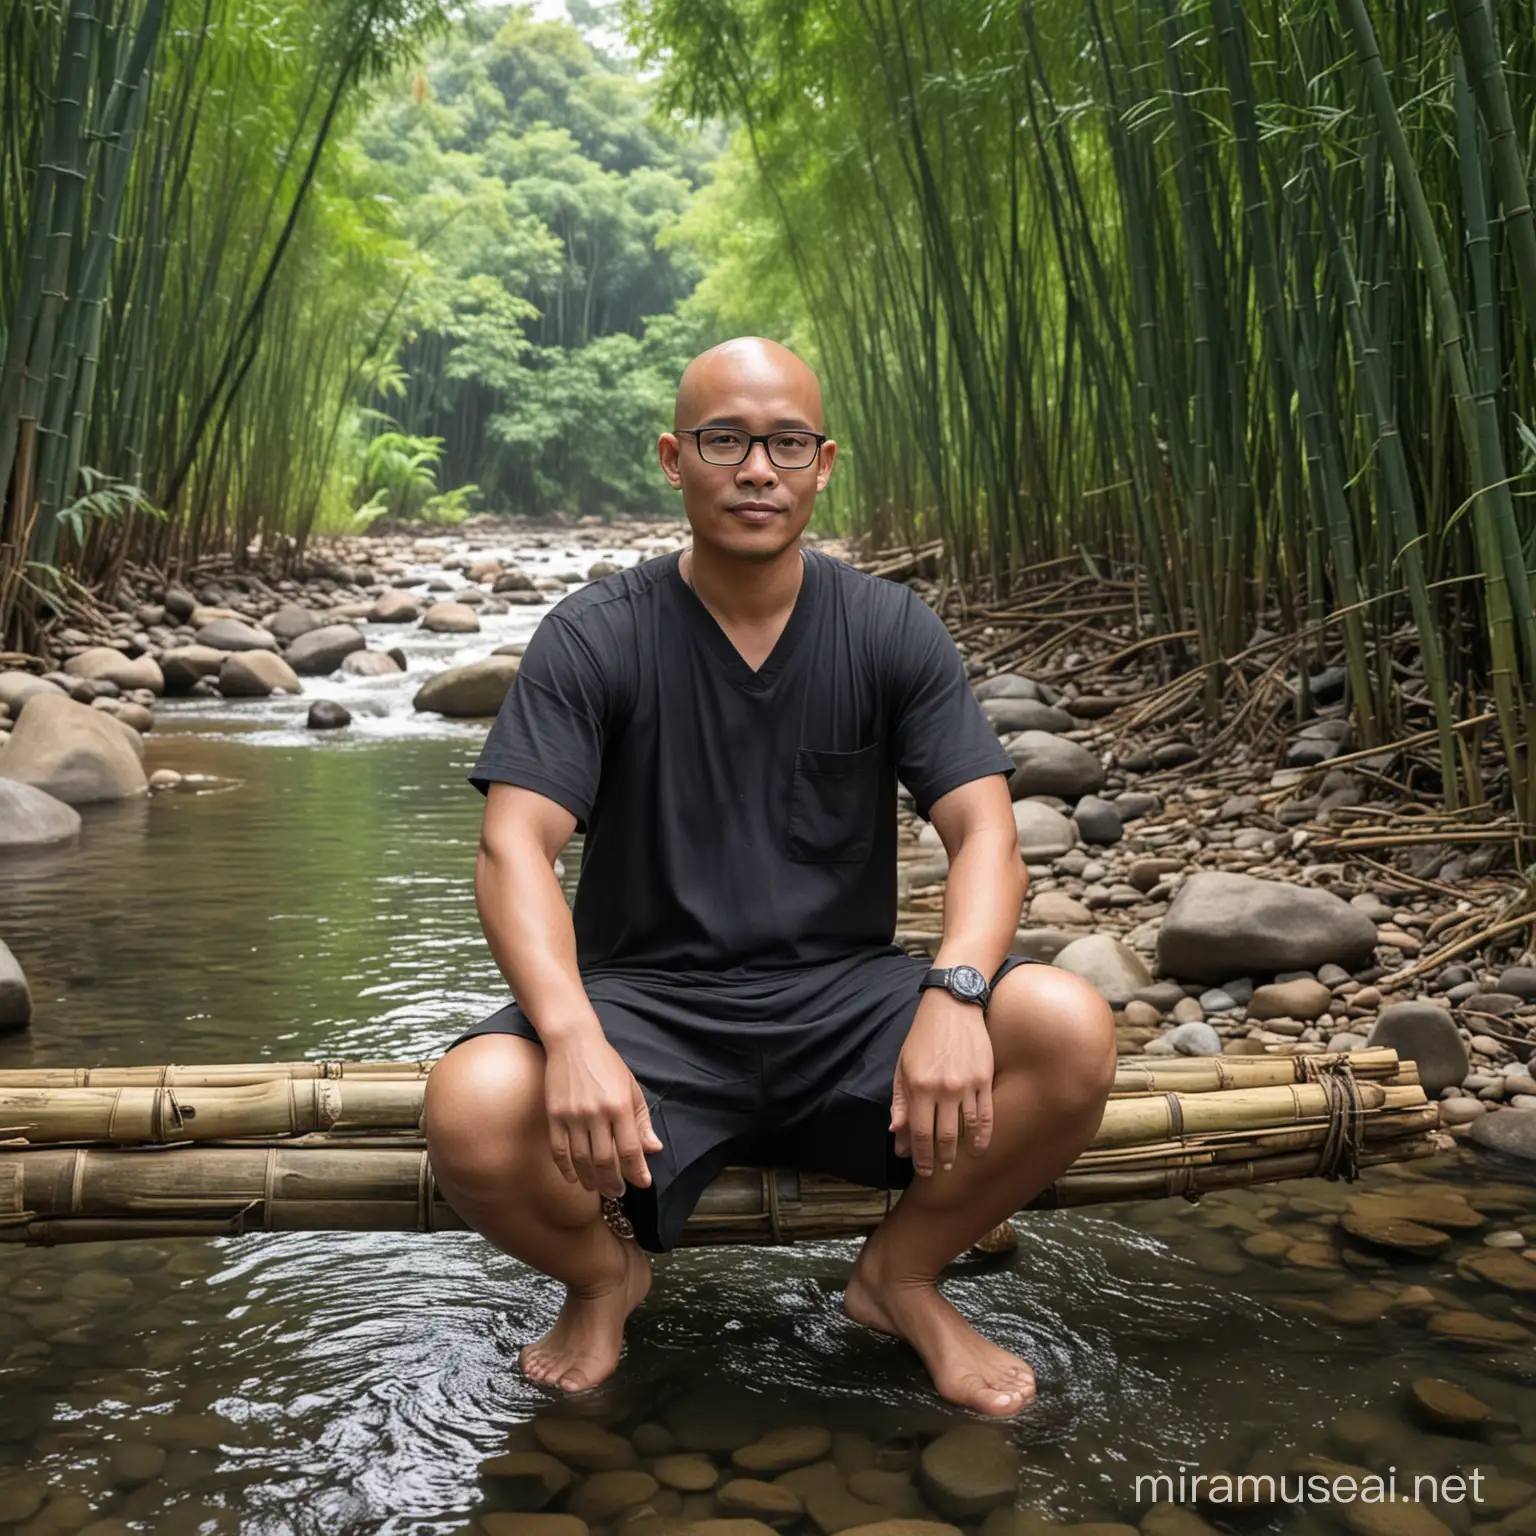 Seorang pria Indonesia umur 35 tahun, berkepala botak, memakai kacamata minus bergagang hitam sedang duduk dikelilingi hutan bambu, di bawah kakinya ada air sungai yang jernih sedang mengalir 